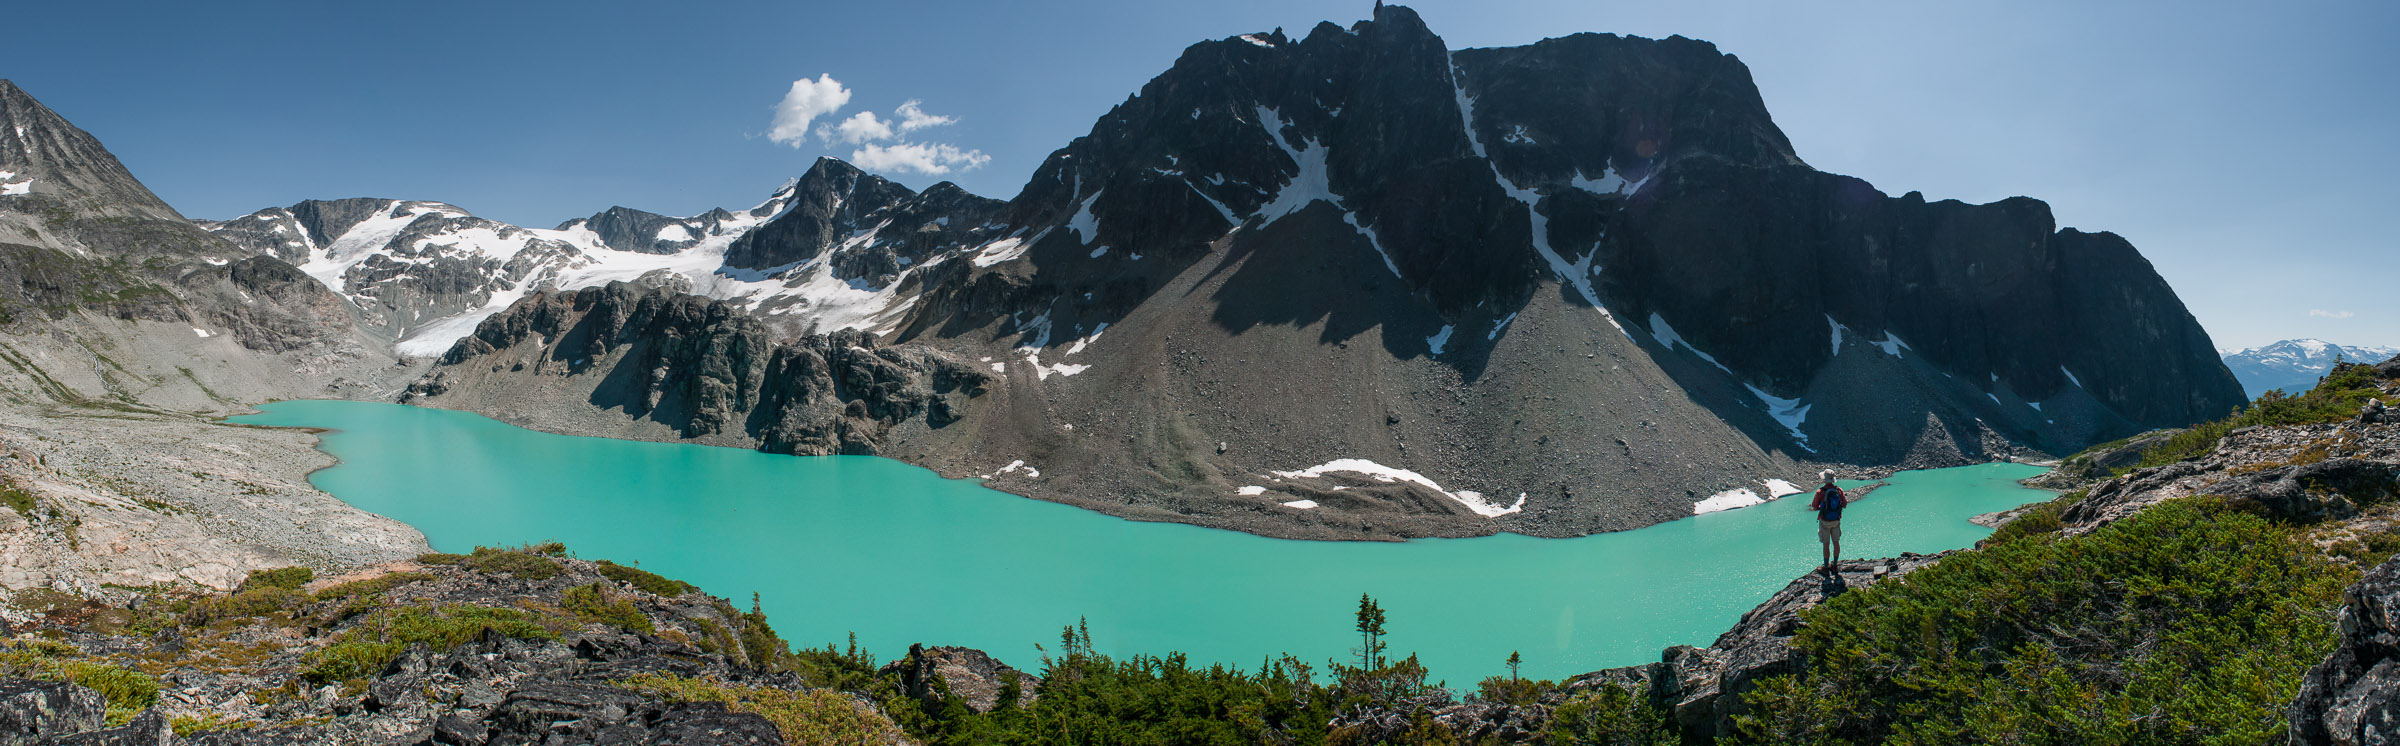 Wedgemount Lake British Columbia